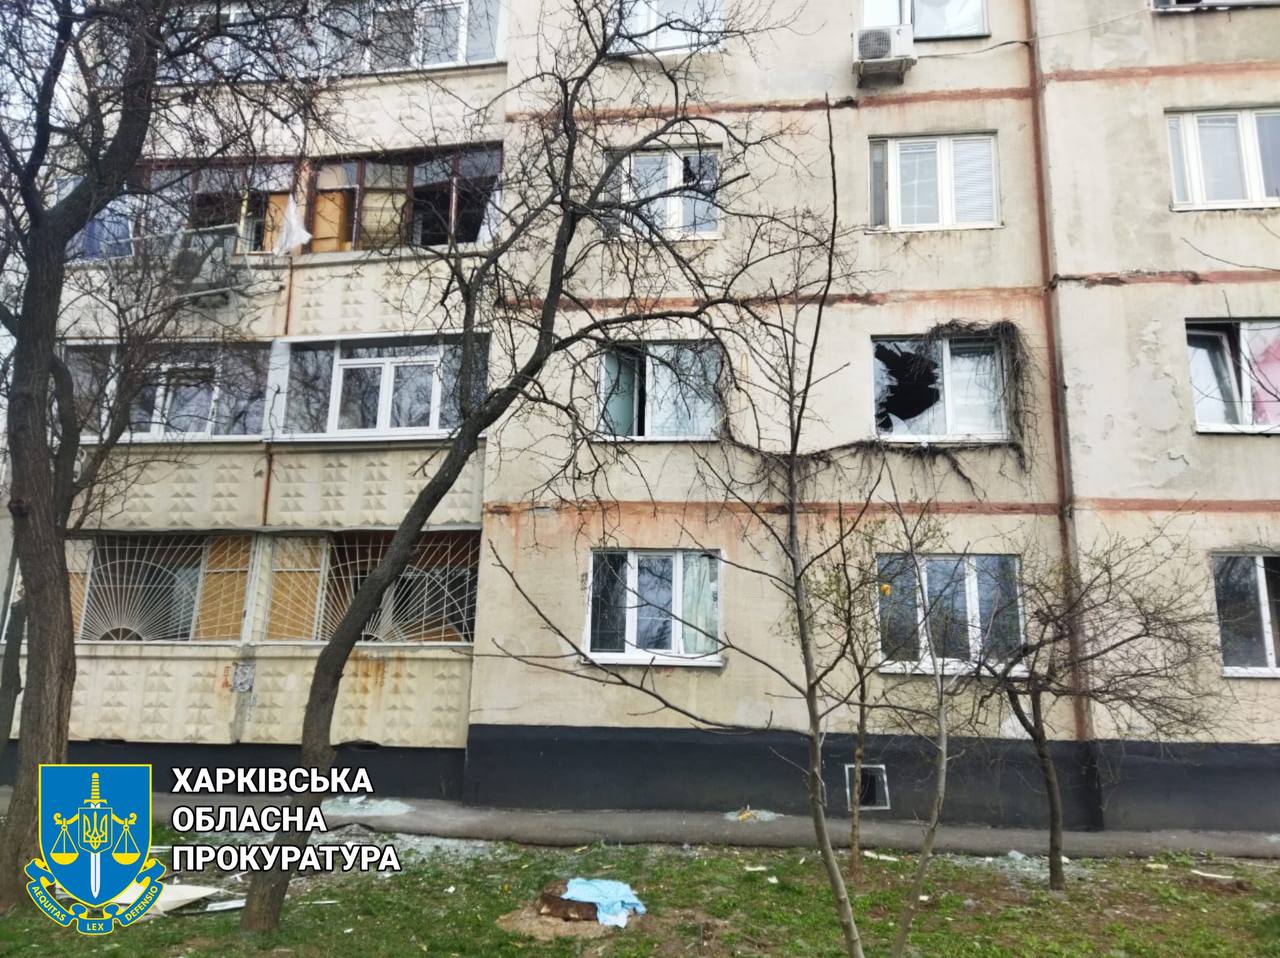 Ракетный удар по Харькову: 6 погибших, 11 раненых (фото)